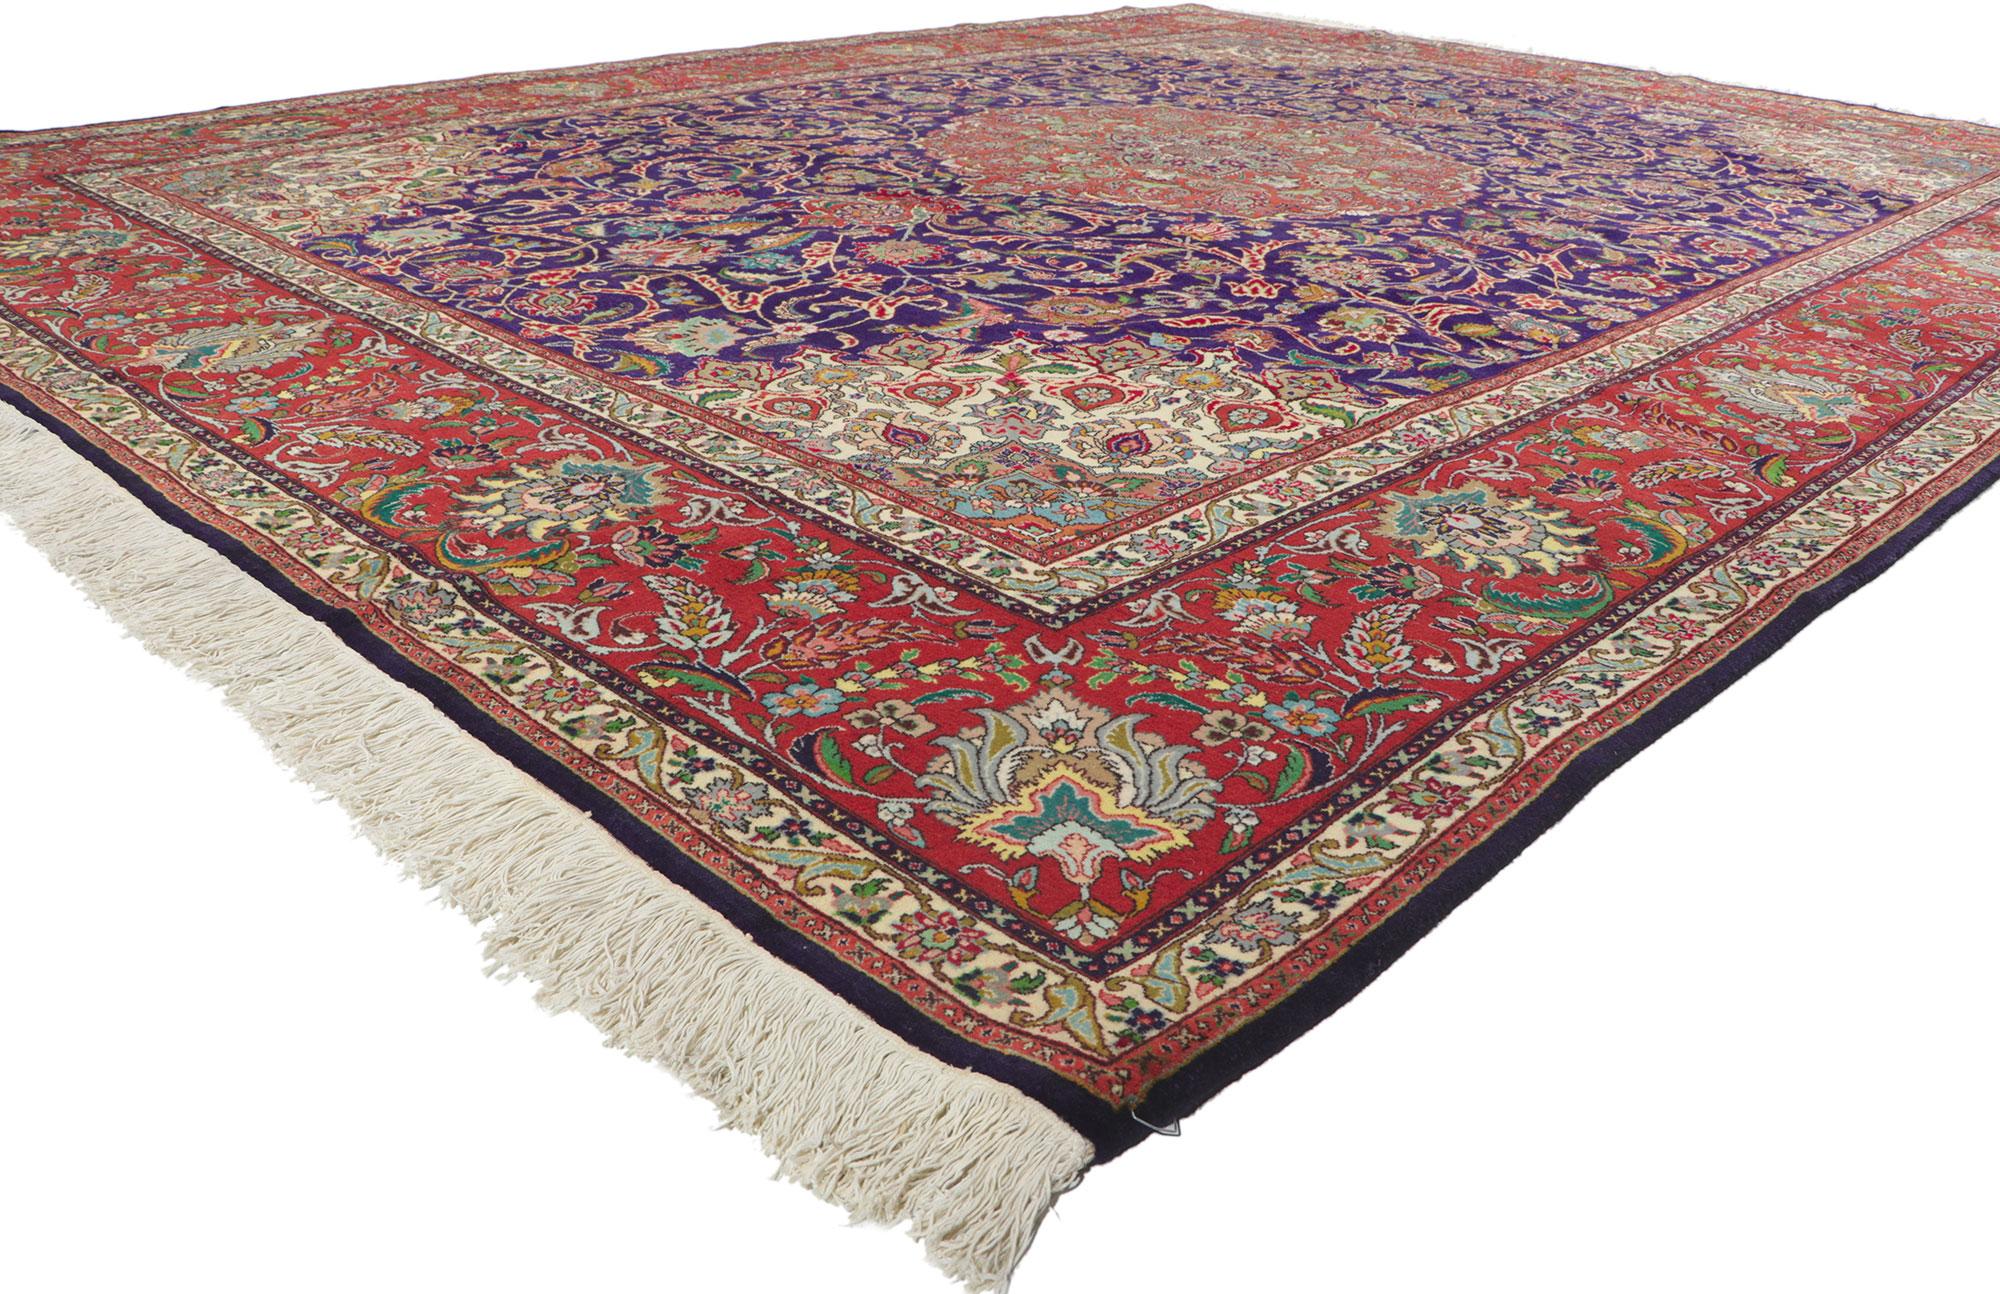 61110 Tapis Persan Vintage Tabriz, 09'08 x 12'11.
Avec son motif floral intemporel, ses détails et sa texture incroyables, ce tapis persan vintage Tabriz en laine noué à la main est une vision captivante de la beauté tissée. Les détails ornés et les